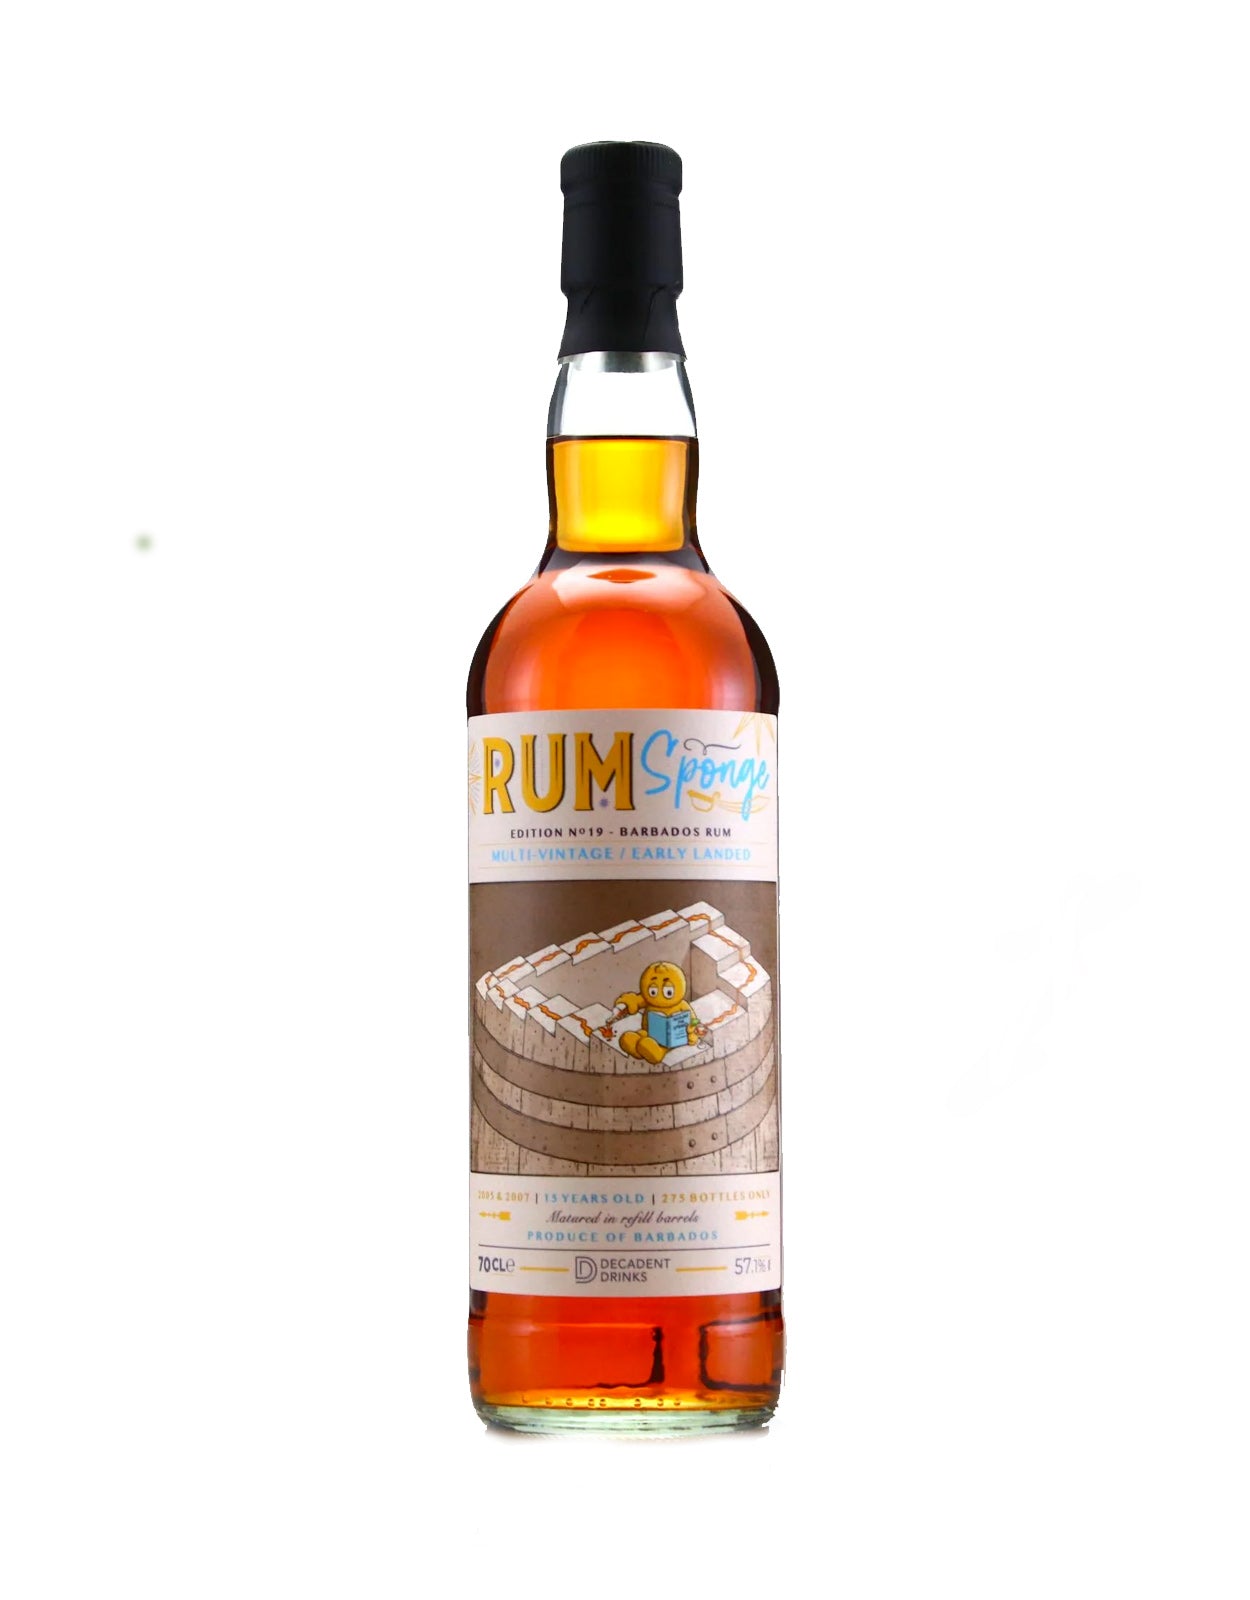 Rum Sponge Barbados Rum 15 Year Old Edition No.19